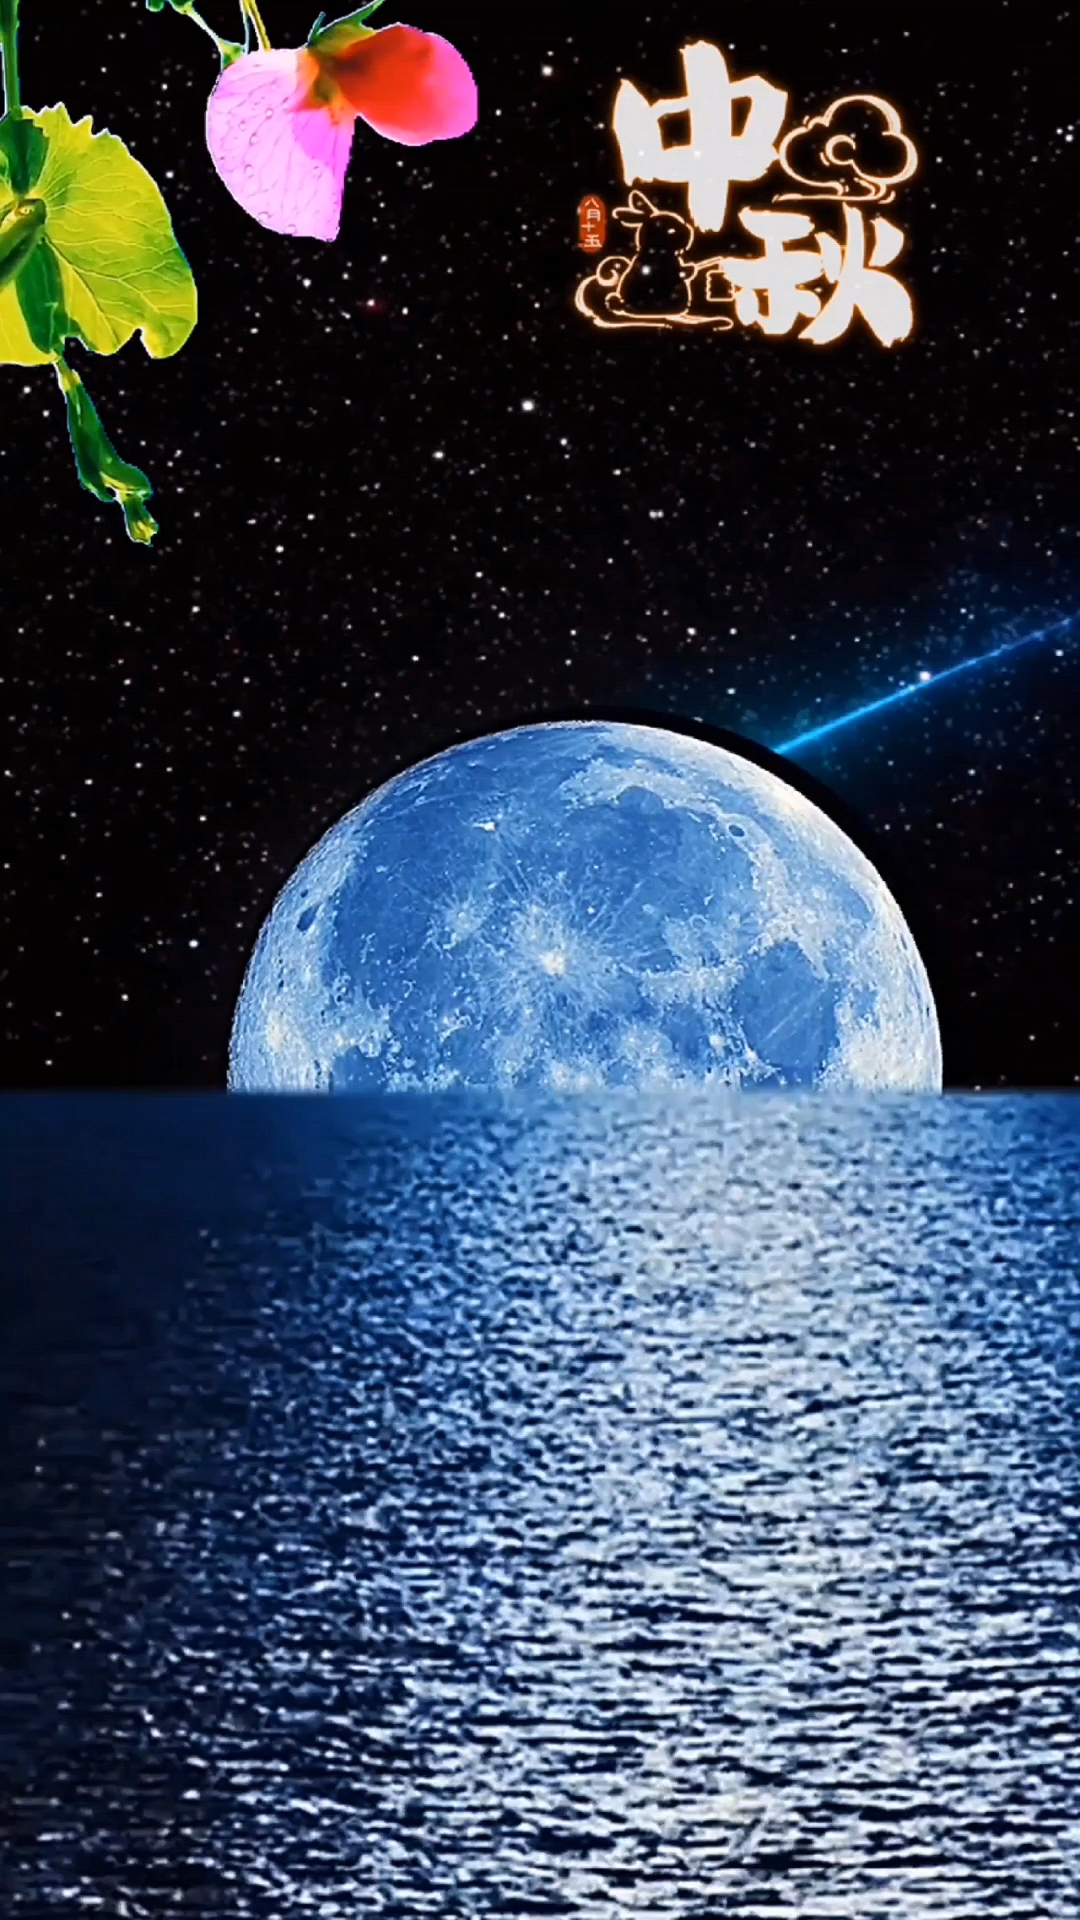 中秋节的晚上对着月亮许愿:希望我爱的人,百事无忌,平安喜乐,万事胜意